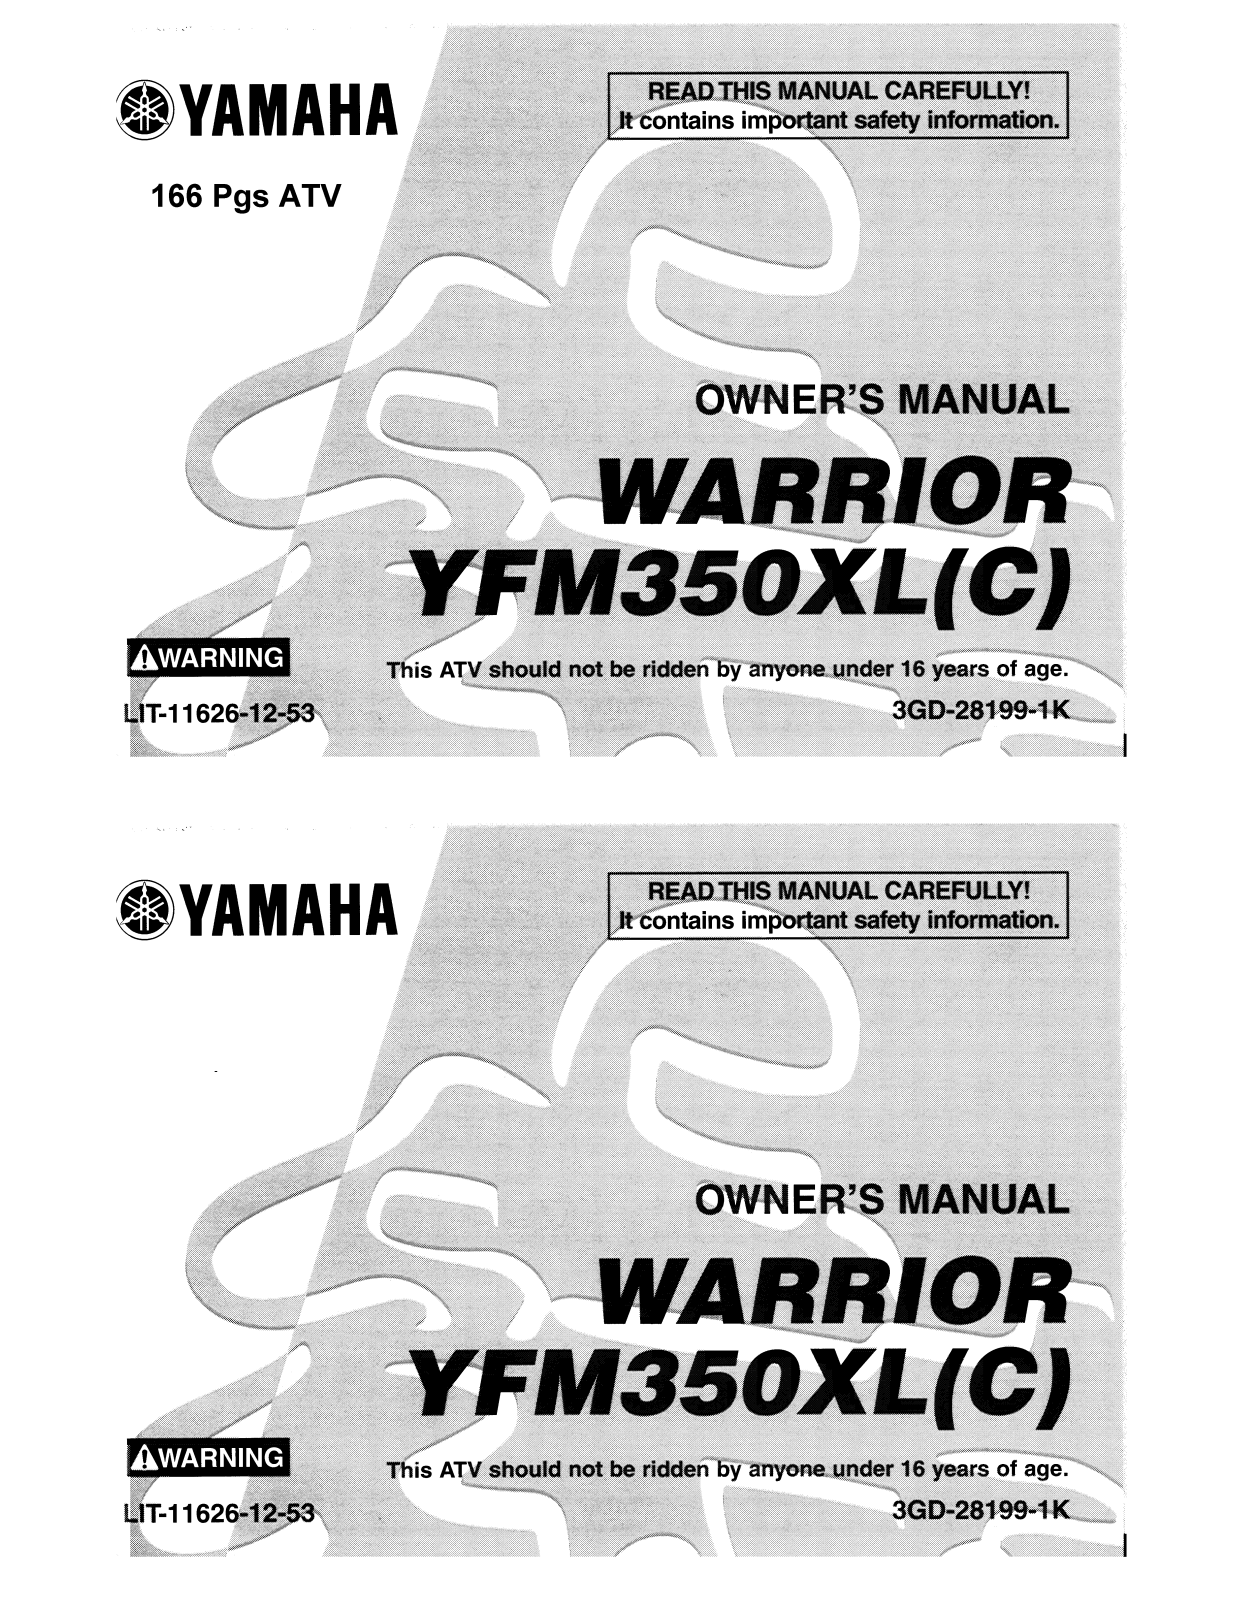 Yamaha YFM350XL(C) User Manual